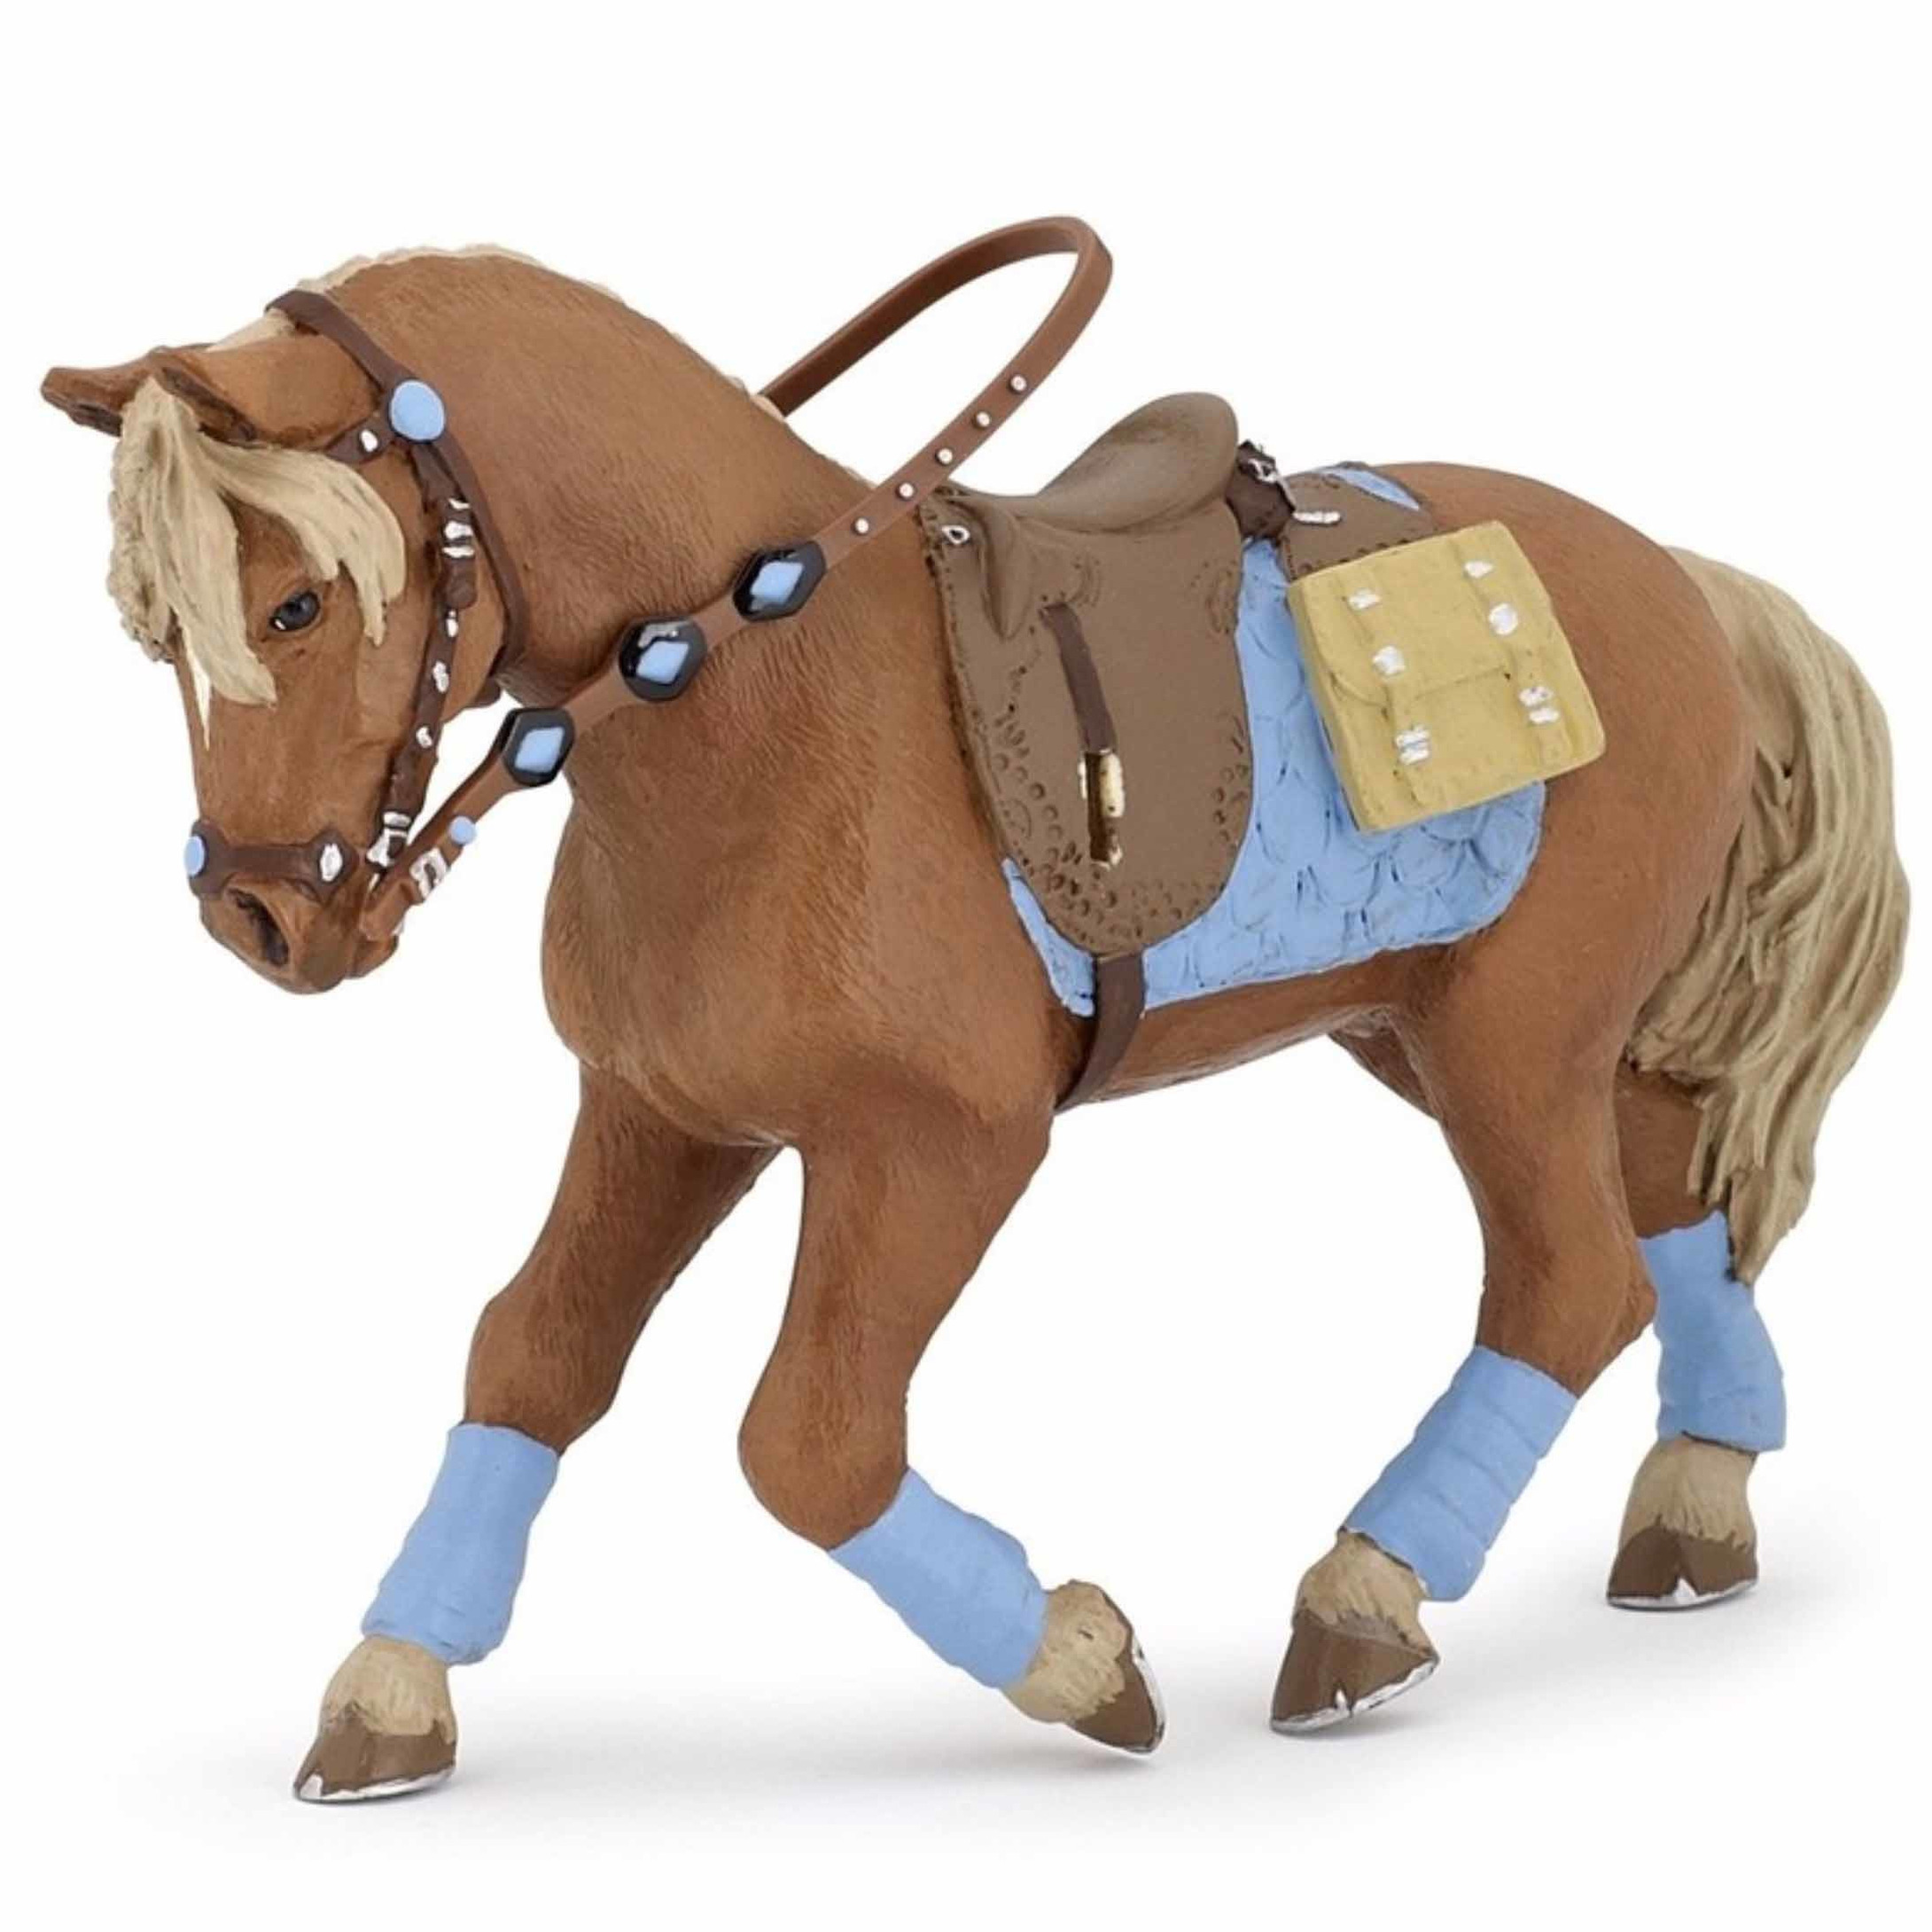 Plastic speelgoed figuur jonge ruiter paard 12 cm